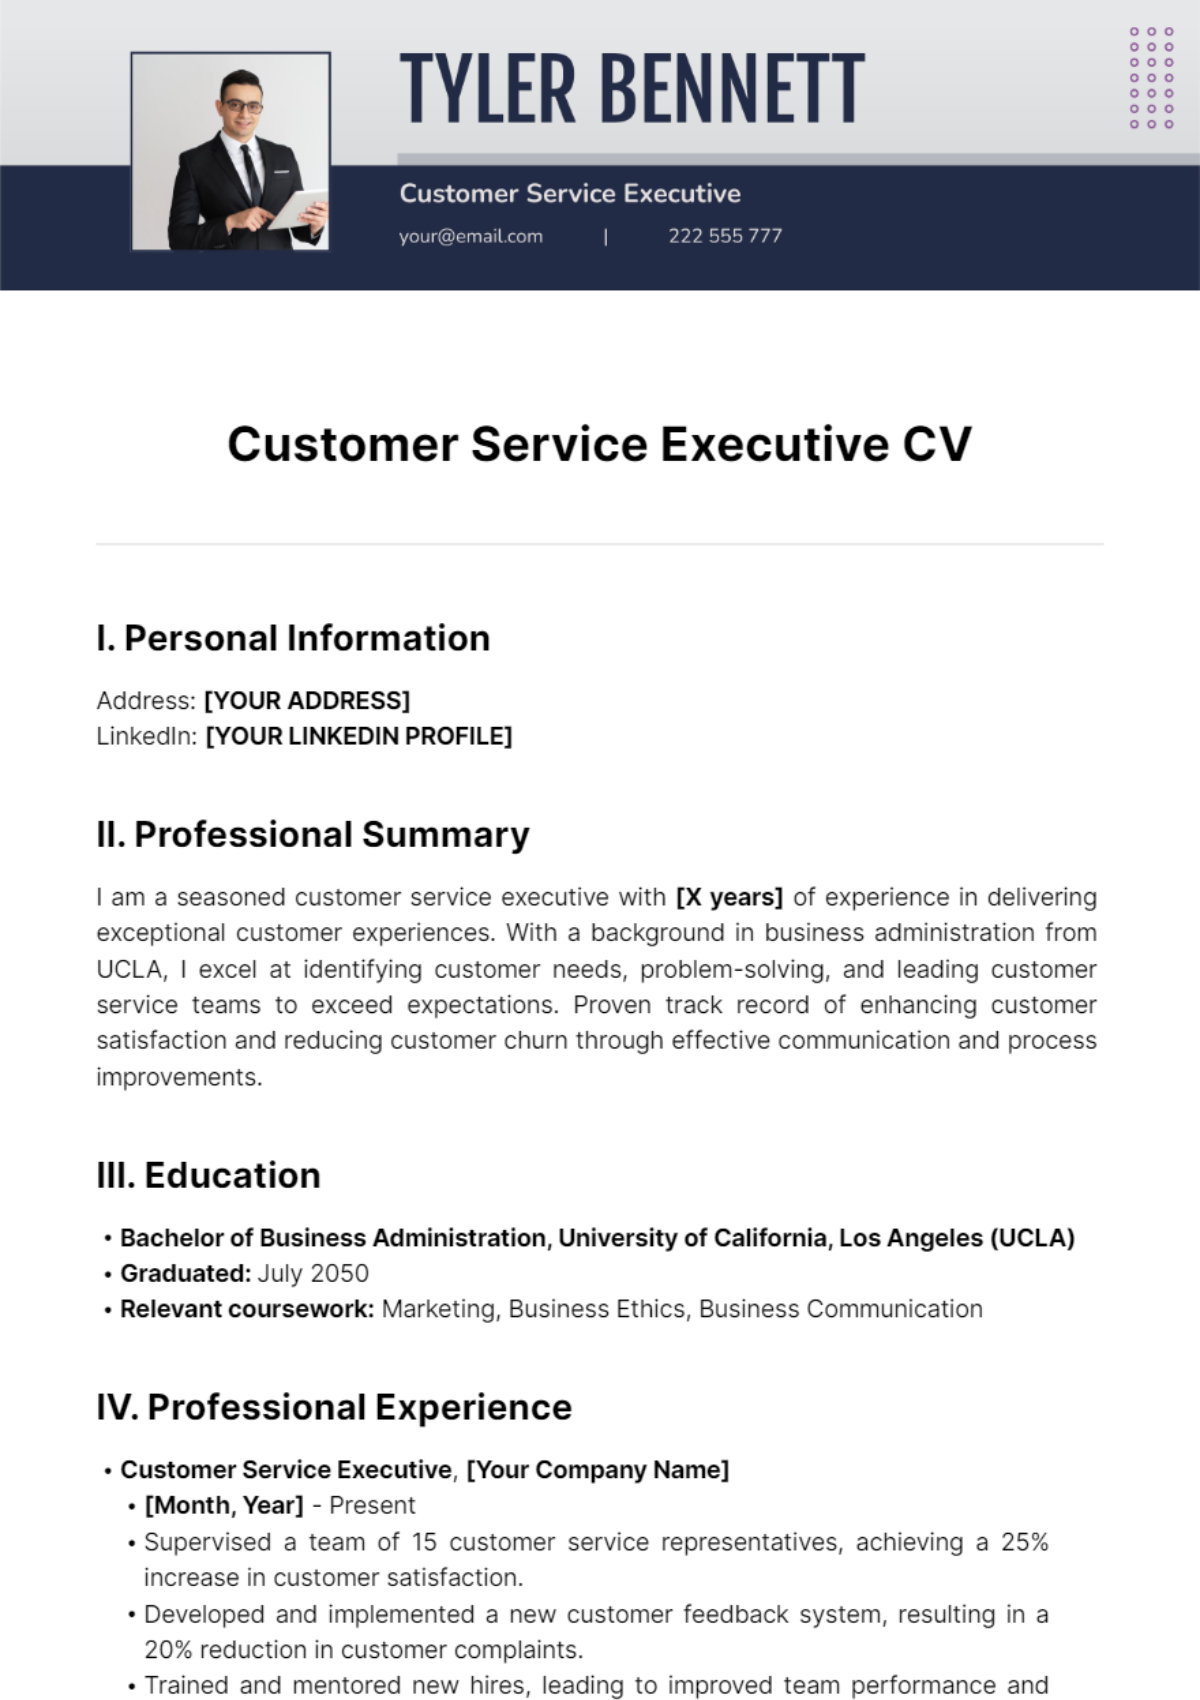 Customer Service Executive CV Template